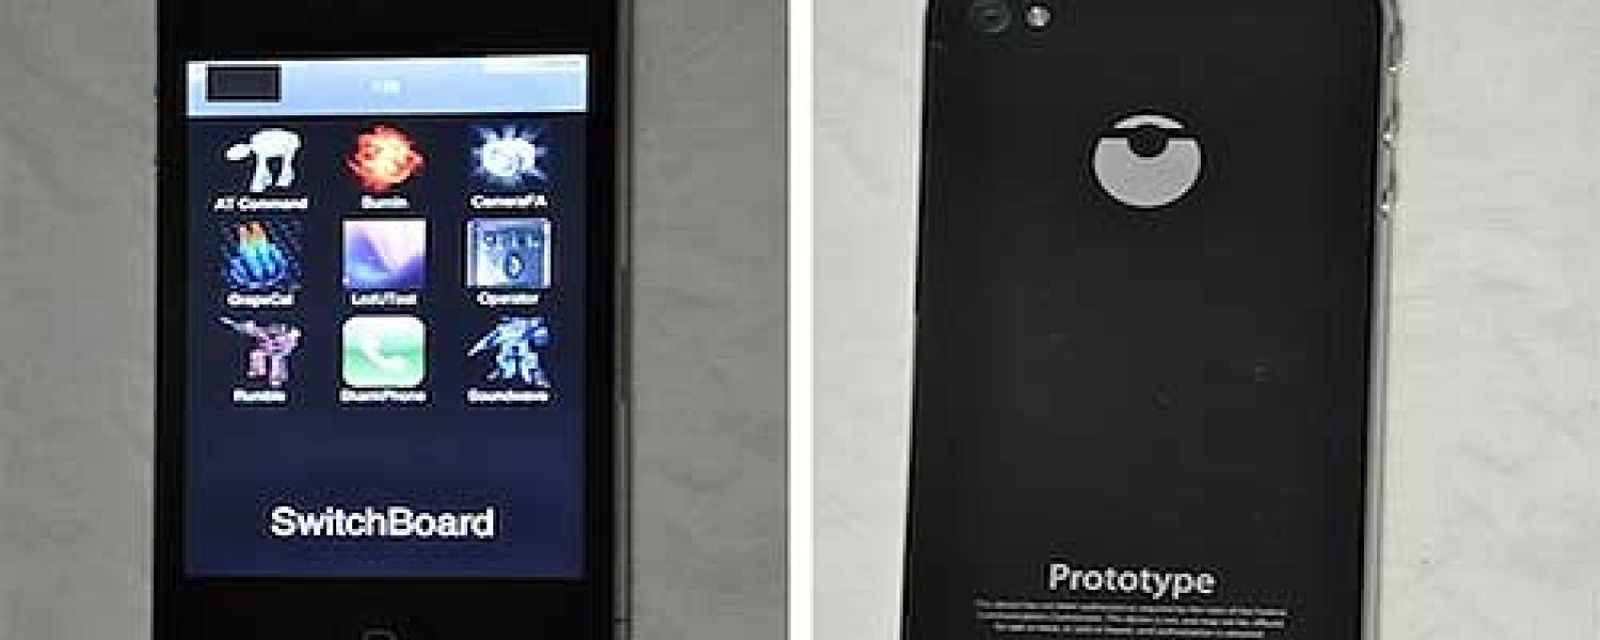 Un prototipo del iPhone 4 más resistente a las caídas arrasa en eBay